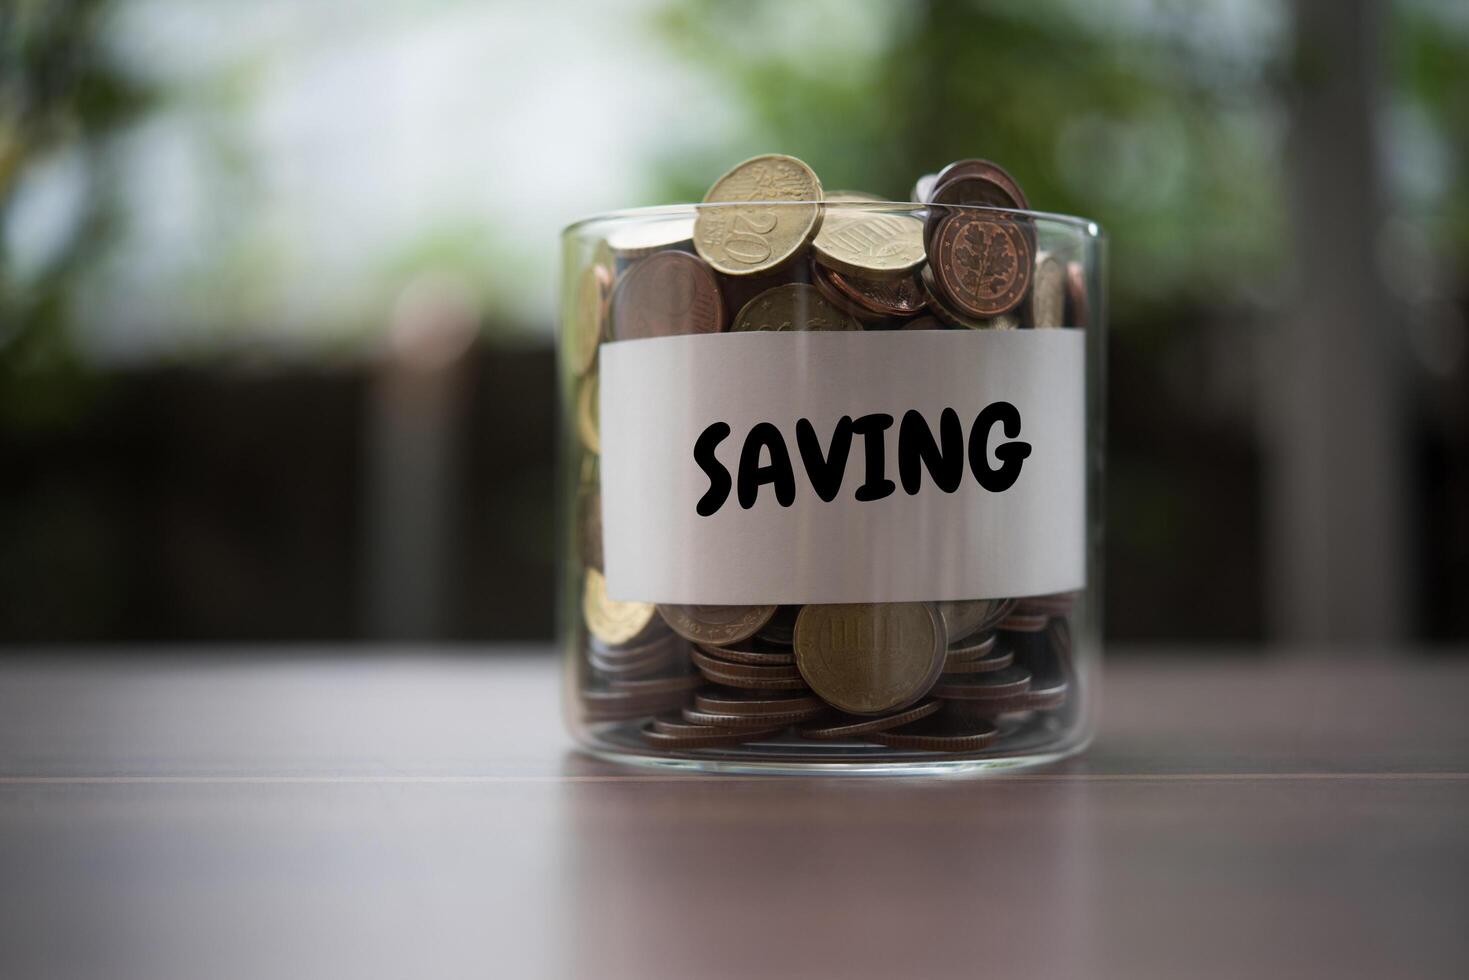 geld besparen voor investeringsconcept munt in de glazen pot foto